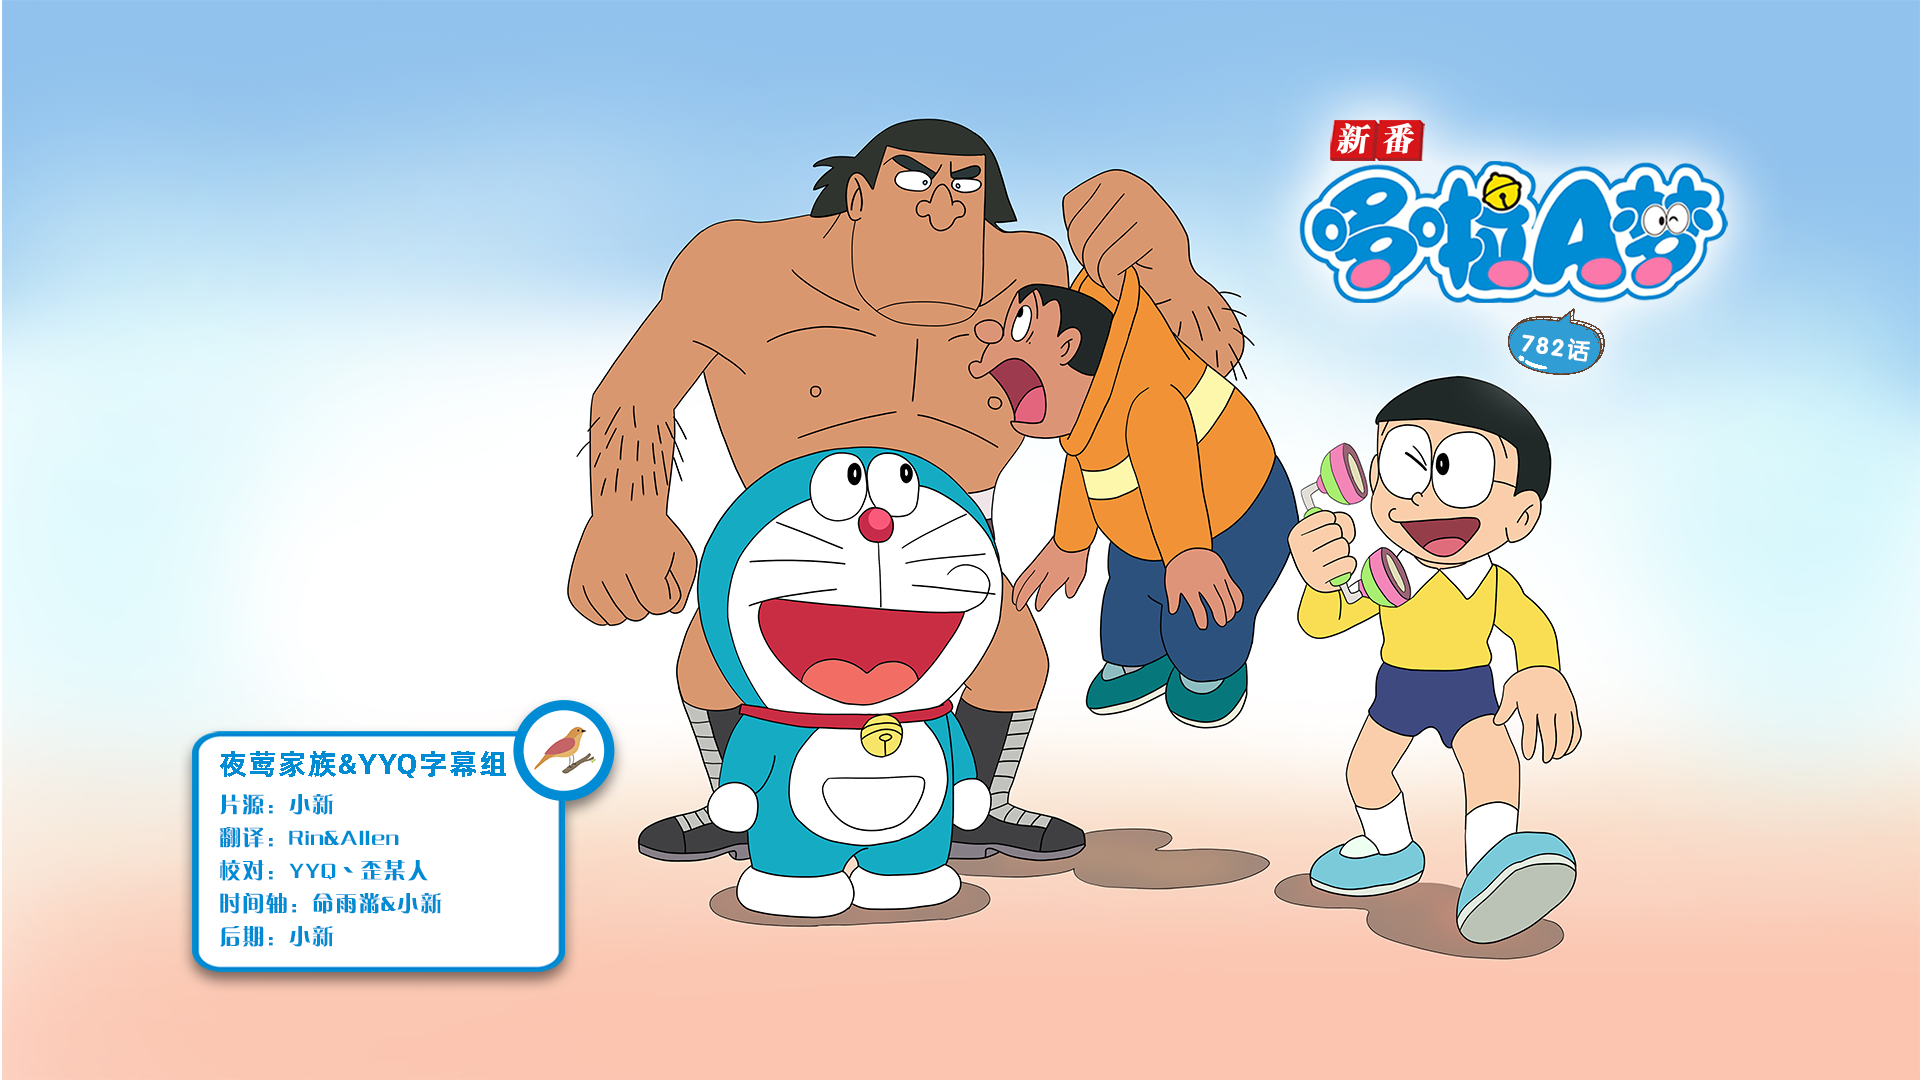 [夜莺家族&YYQ字幕组]New Doraemon 哆啦A梦新番[782][2023.10.28][AVC][1080P][GB_JP]插图icecomic动漫-云之彼端,约定的地方(´･ᴗ･`)2